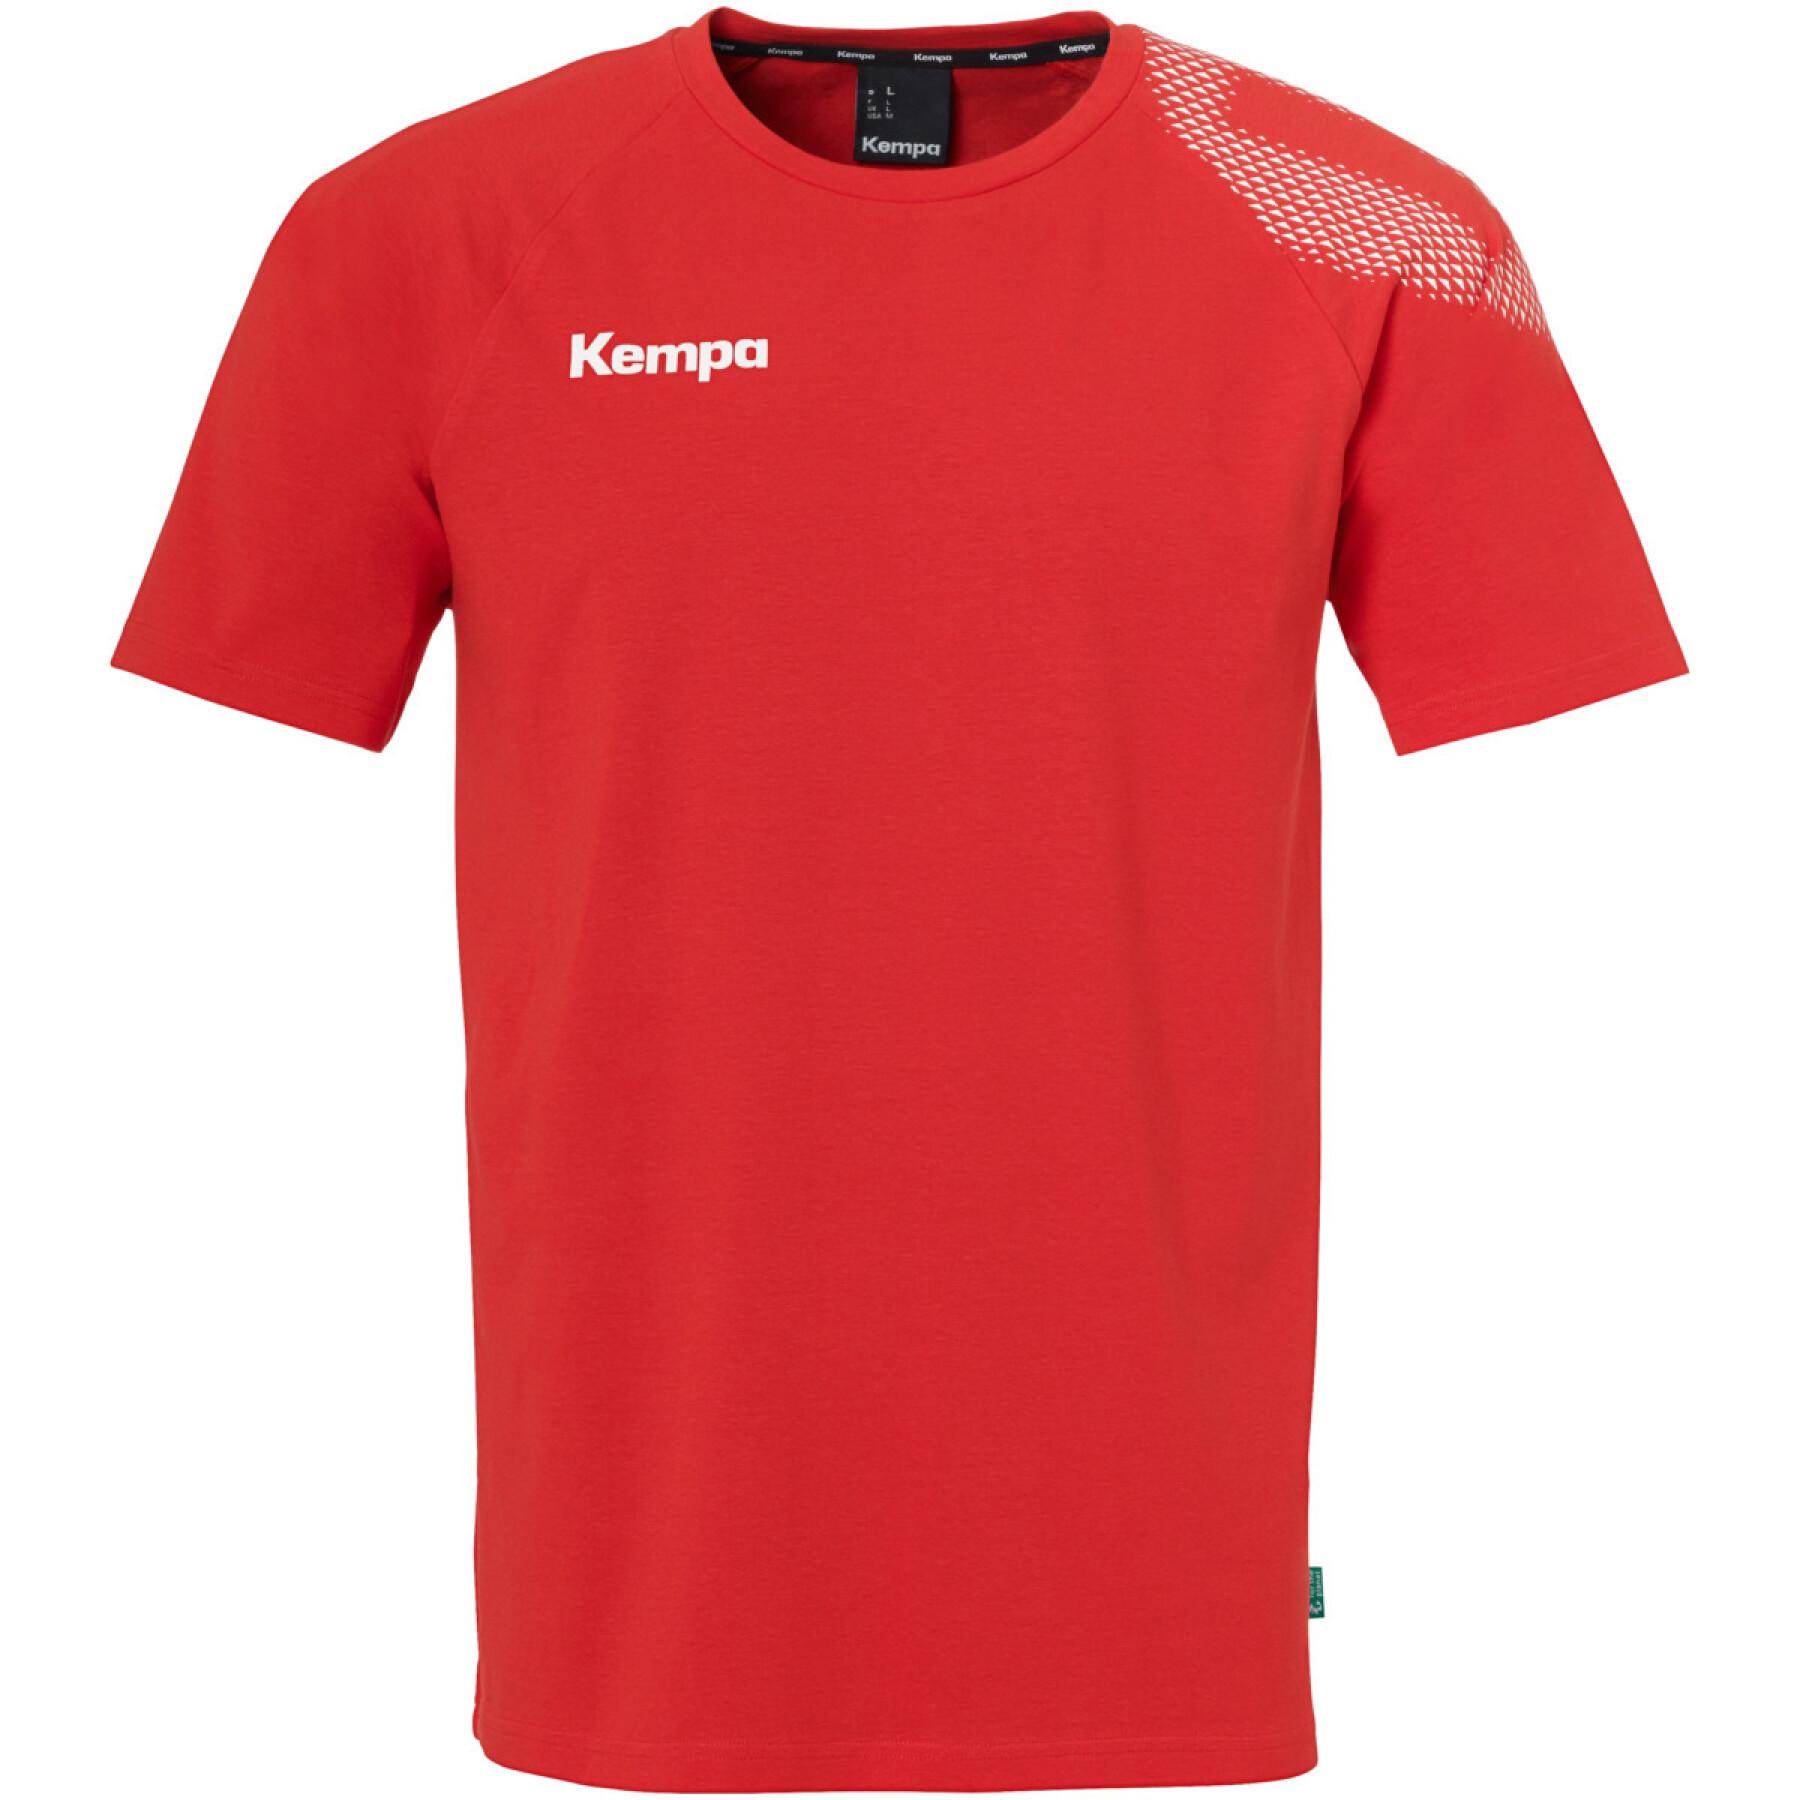 Camiseta infantil Kempa Core 26